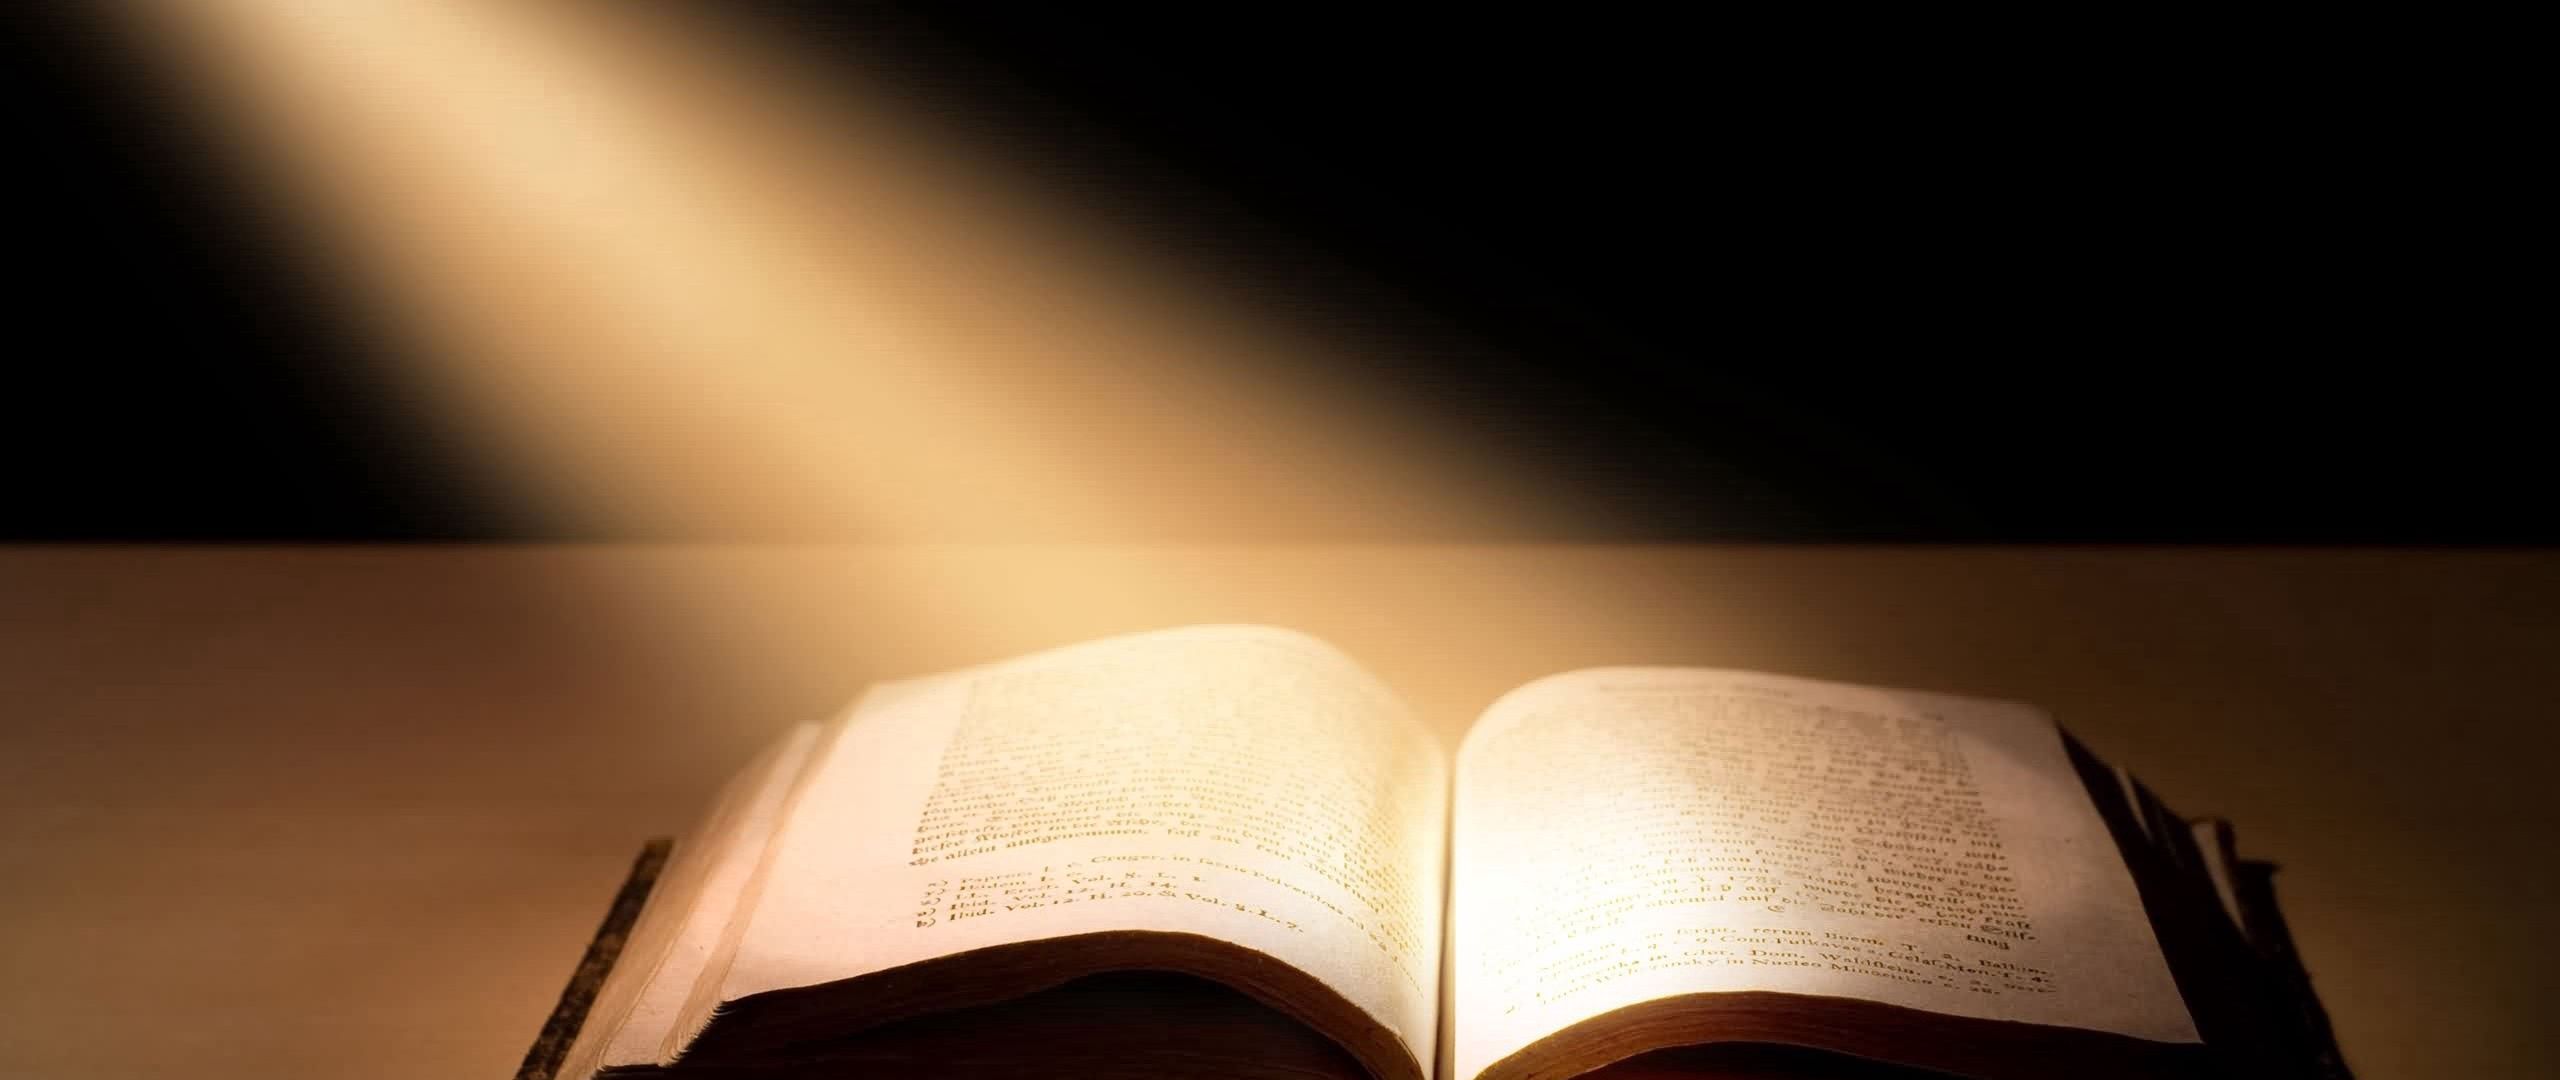 Света и ее истории. Библия раскрытая свет. Библия фон. Открытая Библия. Фон книги.